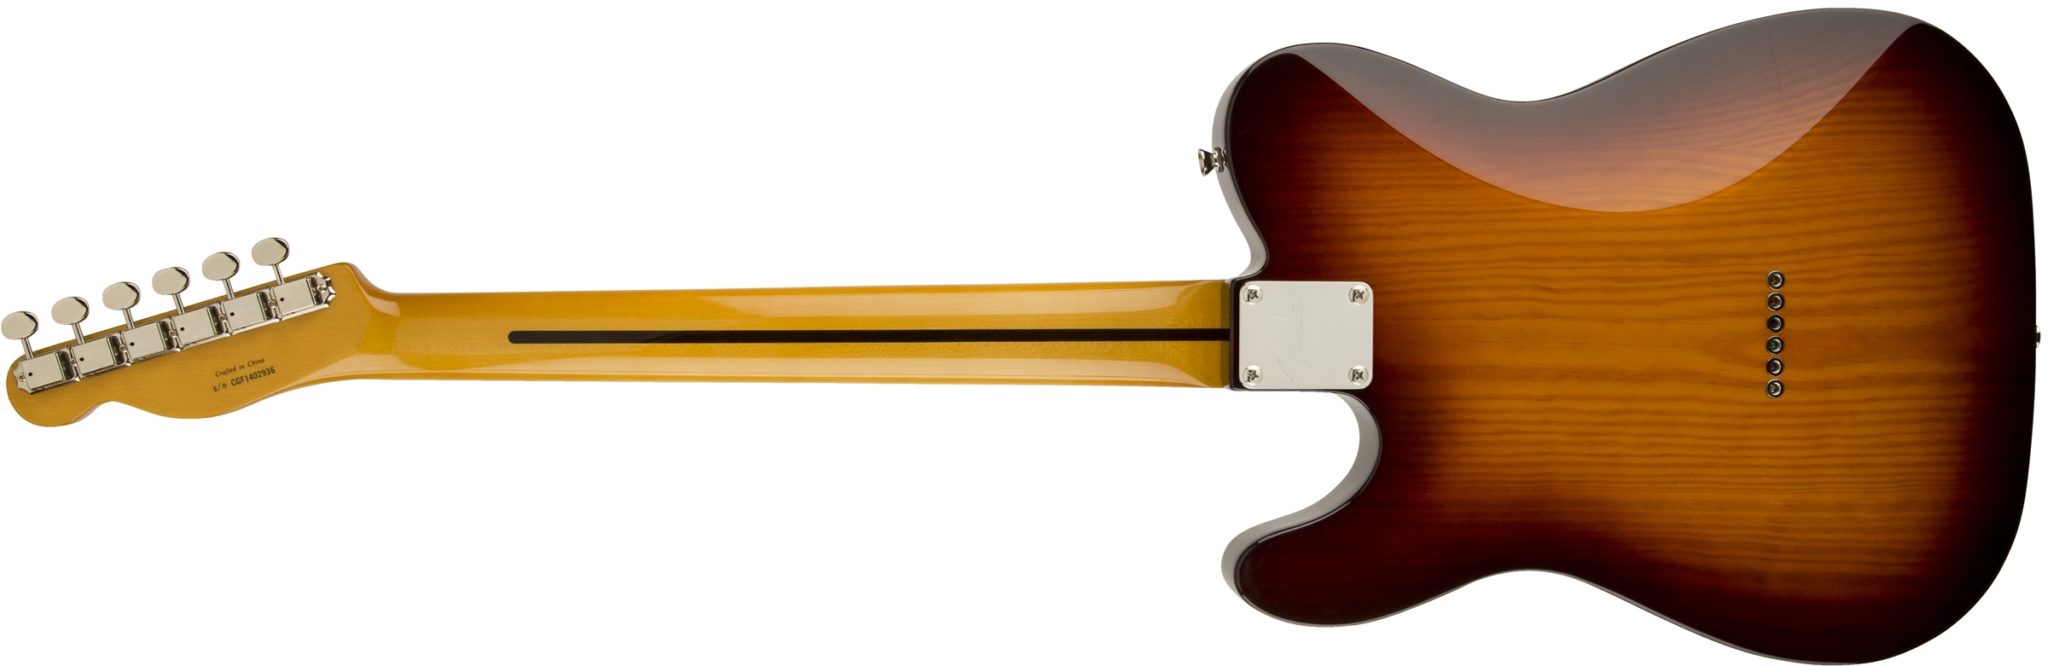 Rückseite einer Fender Telecaster E-Gitarre in Sunburst Lackierung mit geschraubtem Hals und charakteristischem Skunkstripe.